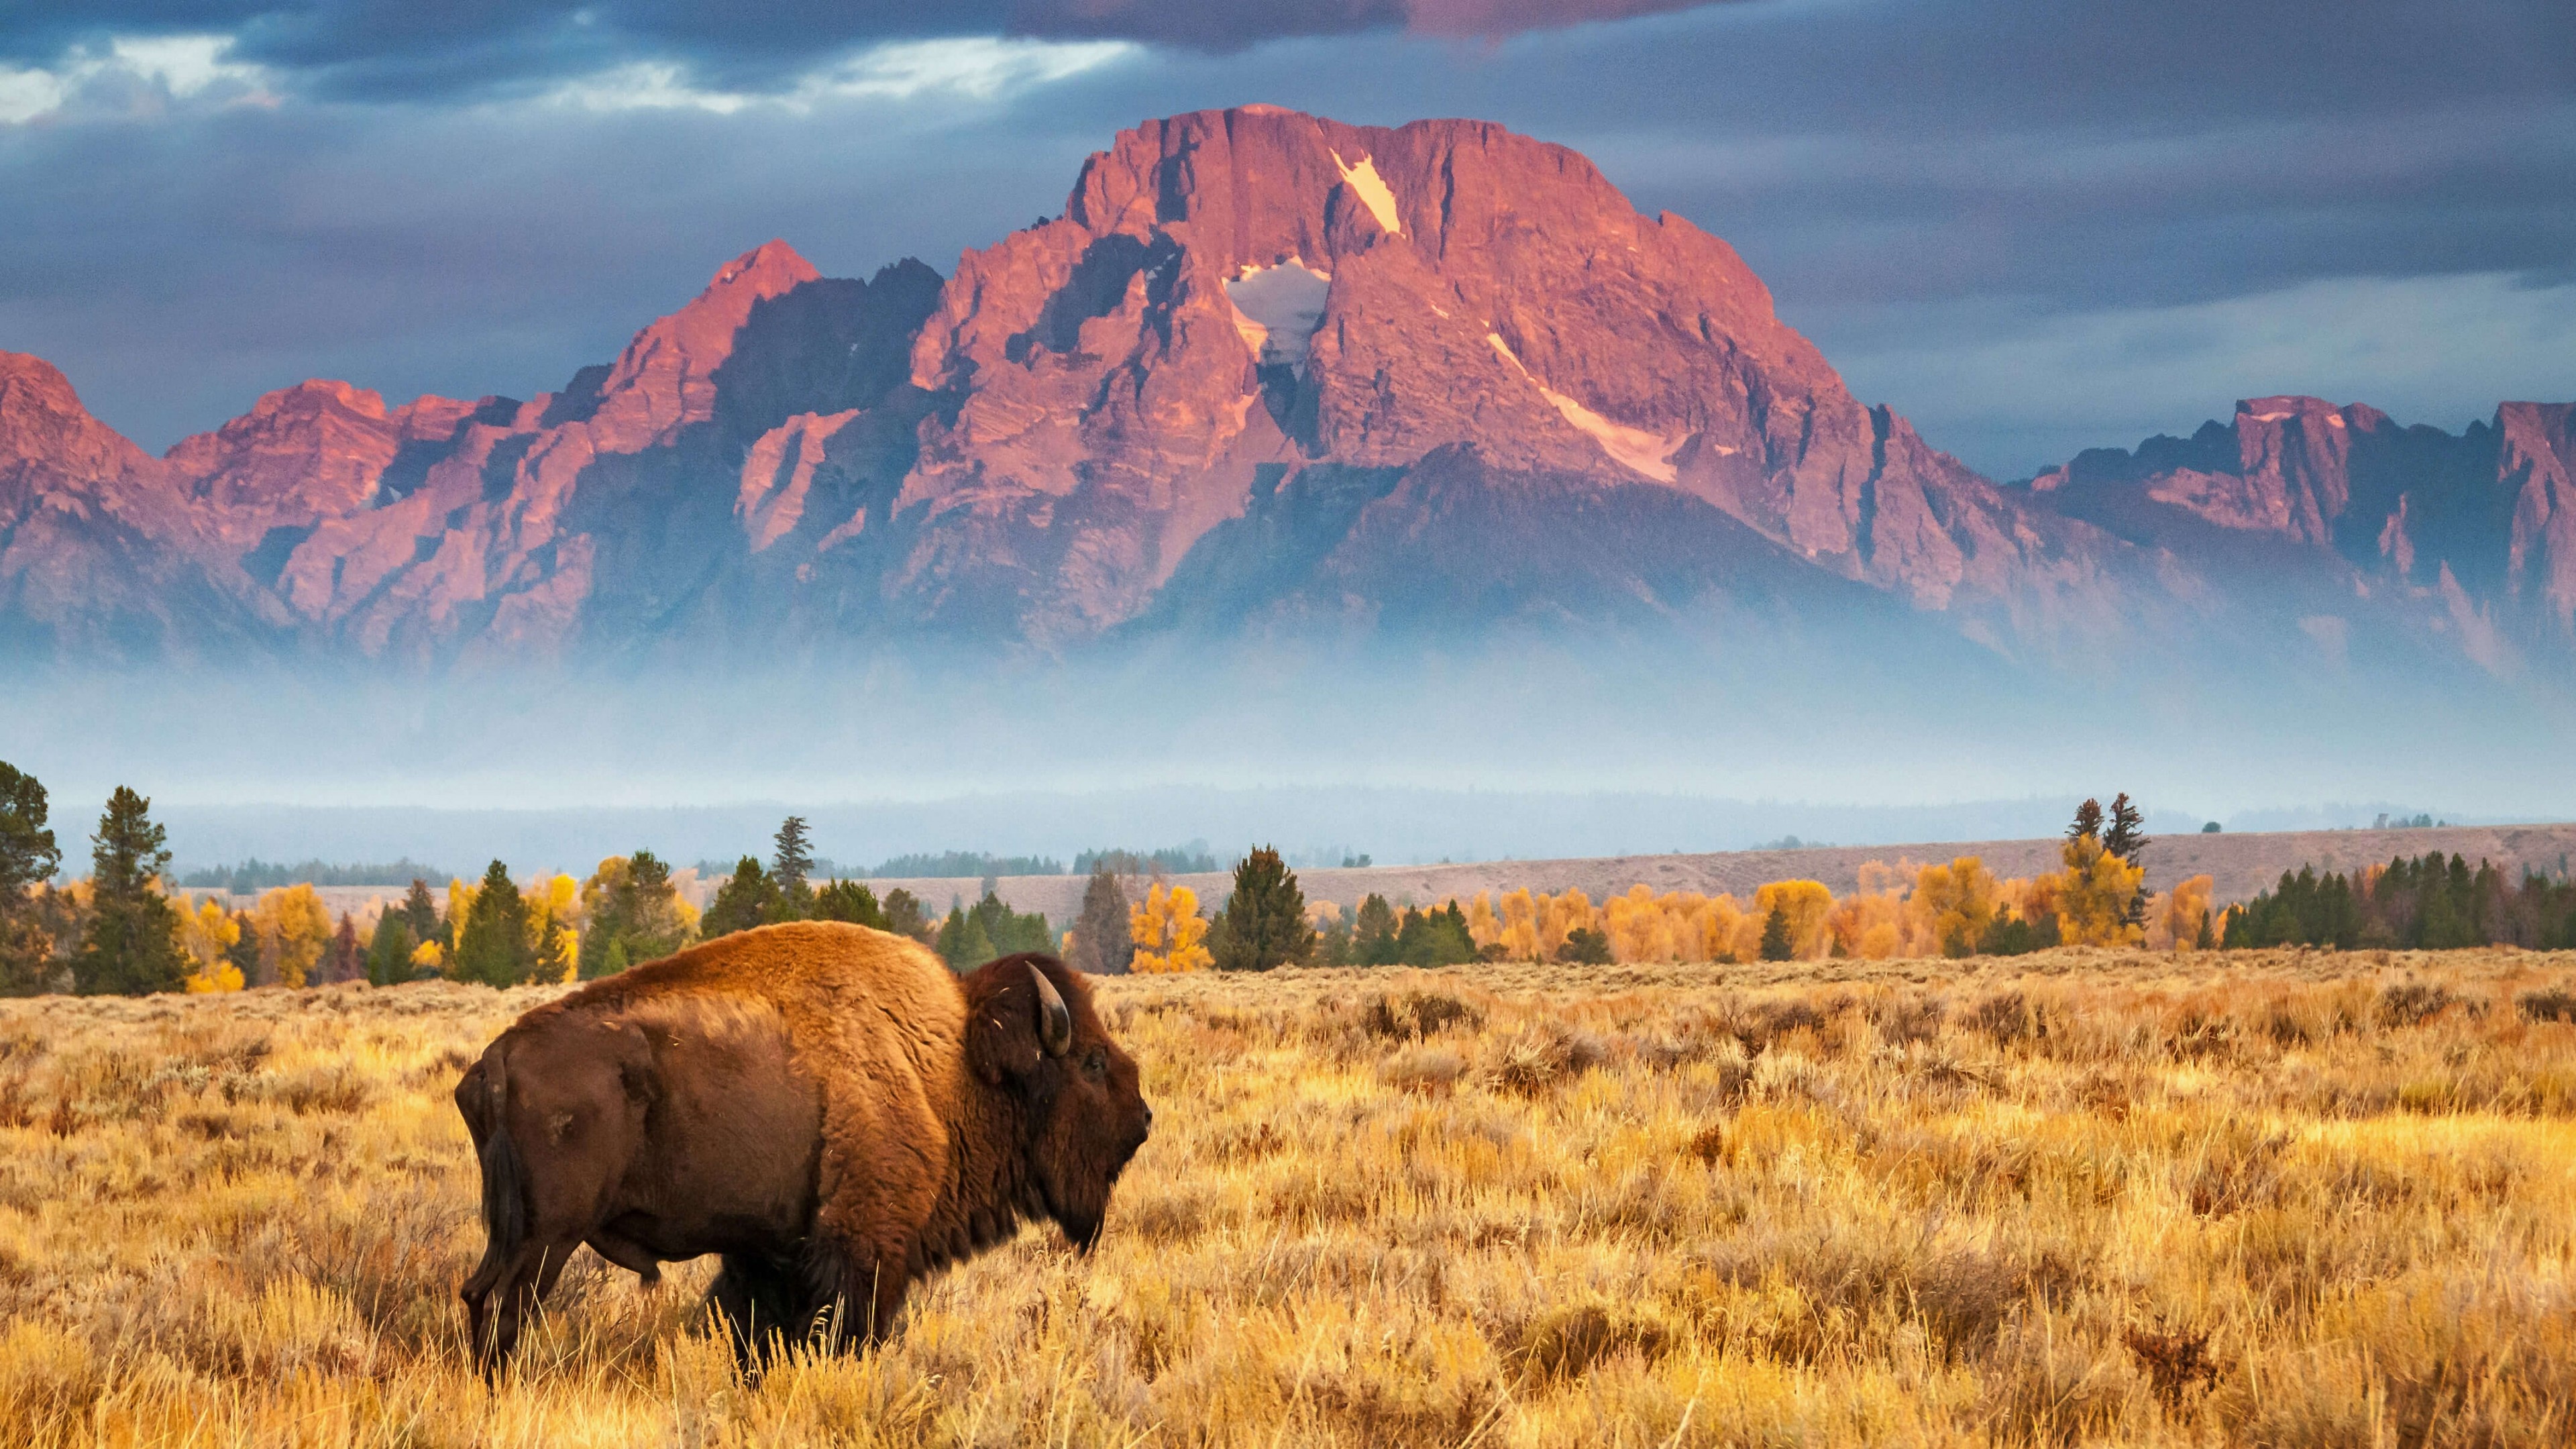 Bison wallpaper, Grand Teton National Park, Wyoming, Bing Microsoft 4K, 3840x2160 4K Desktop